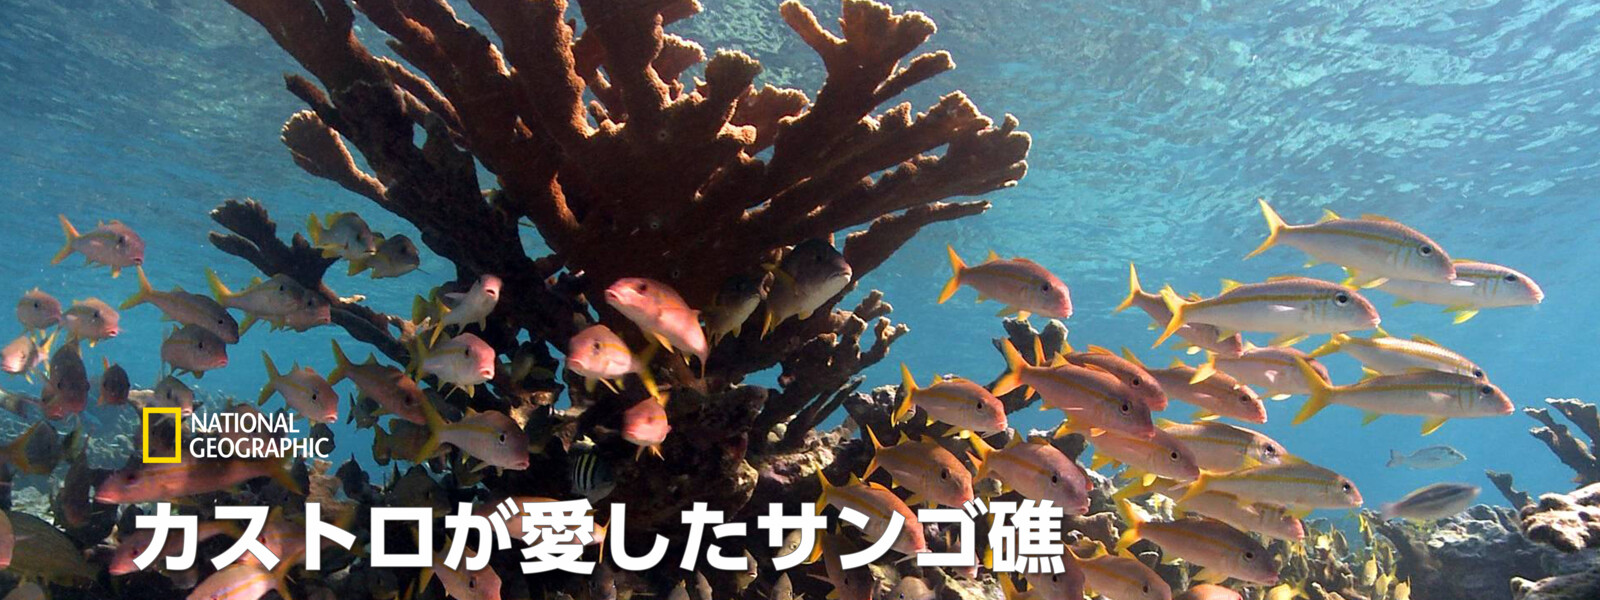 カストロが愛したサンゴ礁 動画